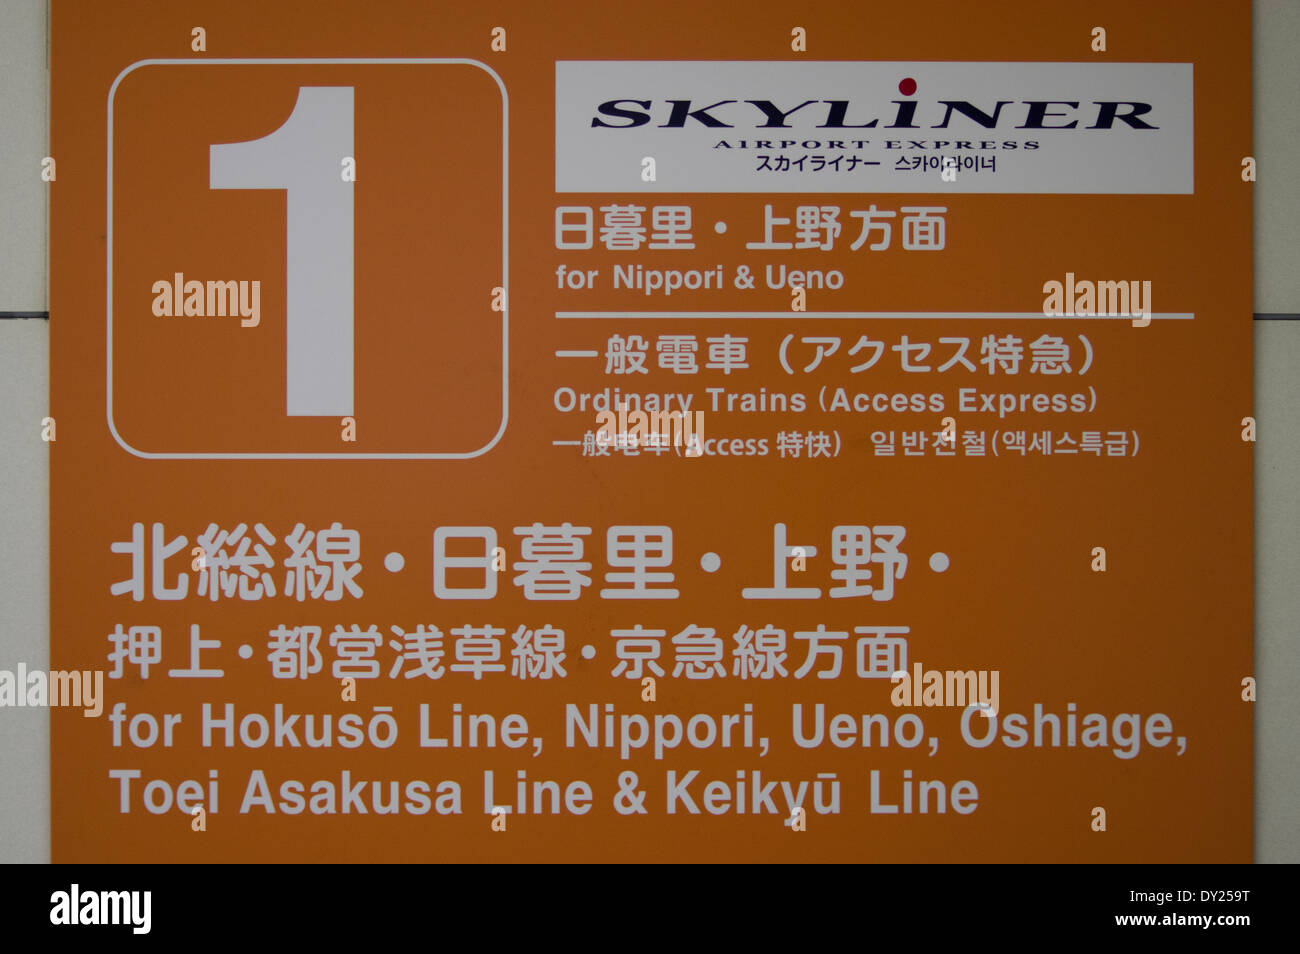 Plattform-Zeichen des Skyliner Airport Express vom Flughafen Narita Nippori und Ueno, Zentrum von Tokio Stockfoto